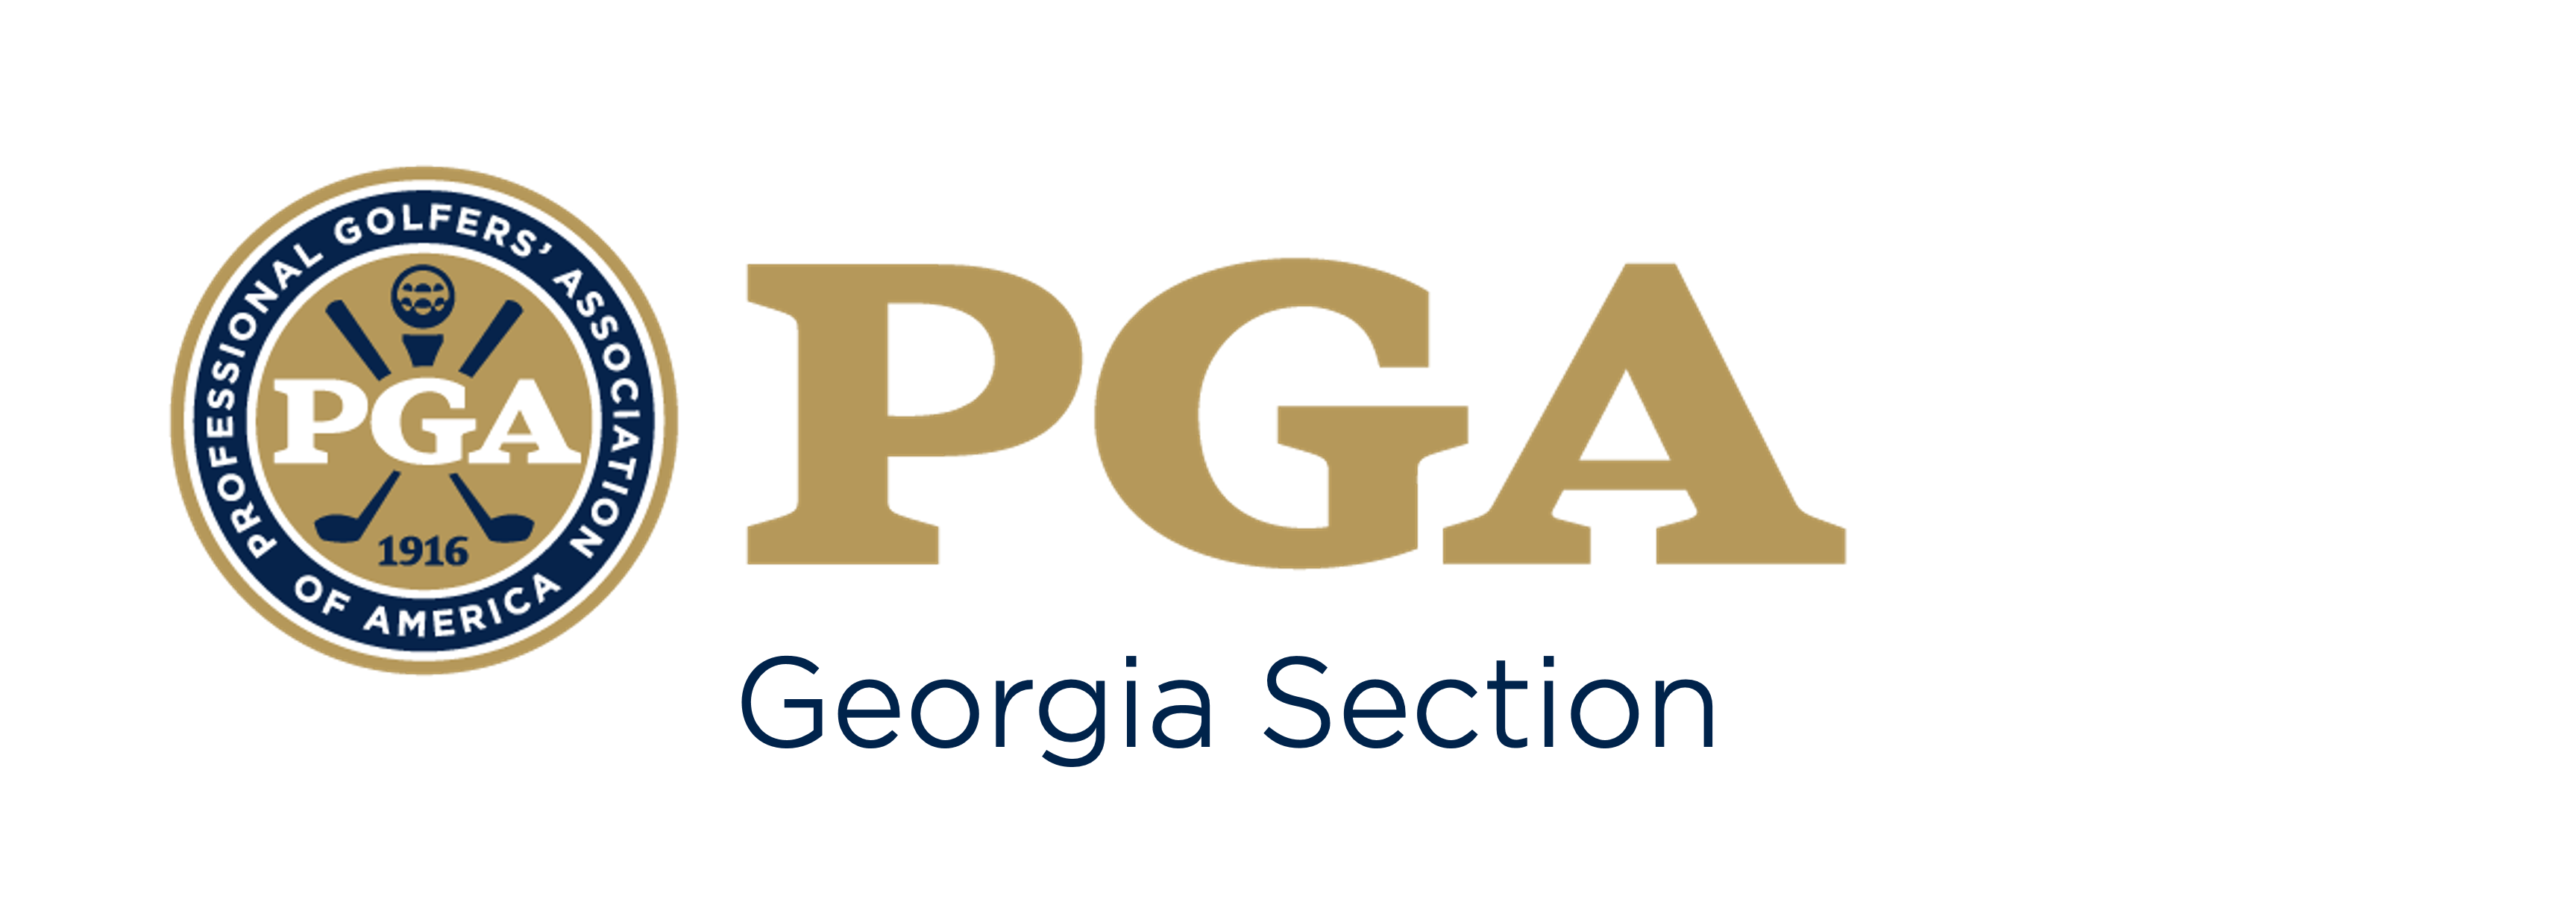 Georgia PGA Hole In One Program